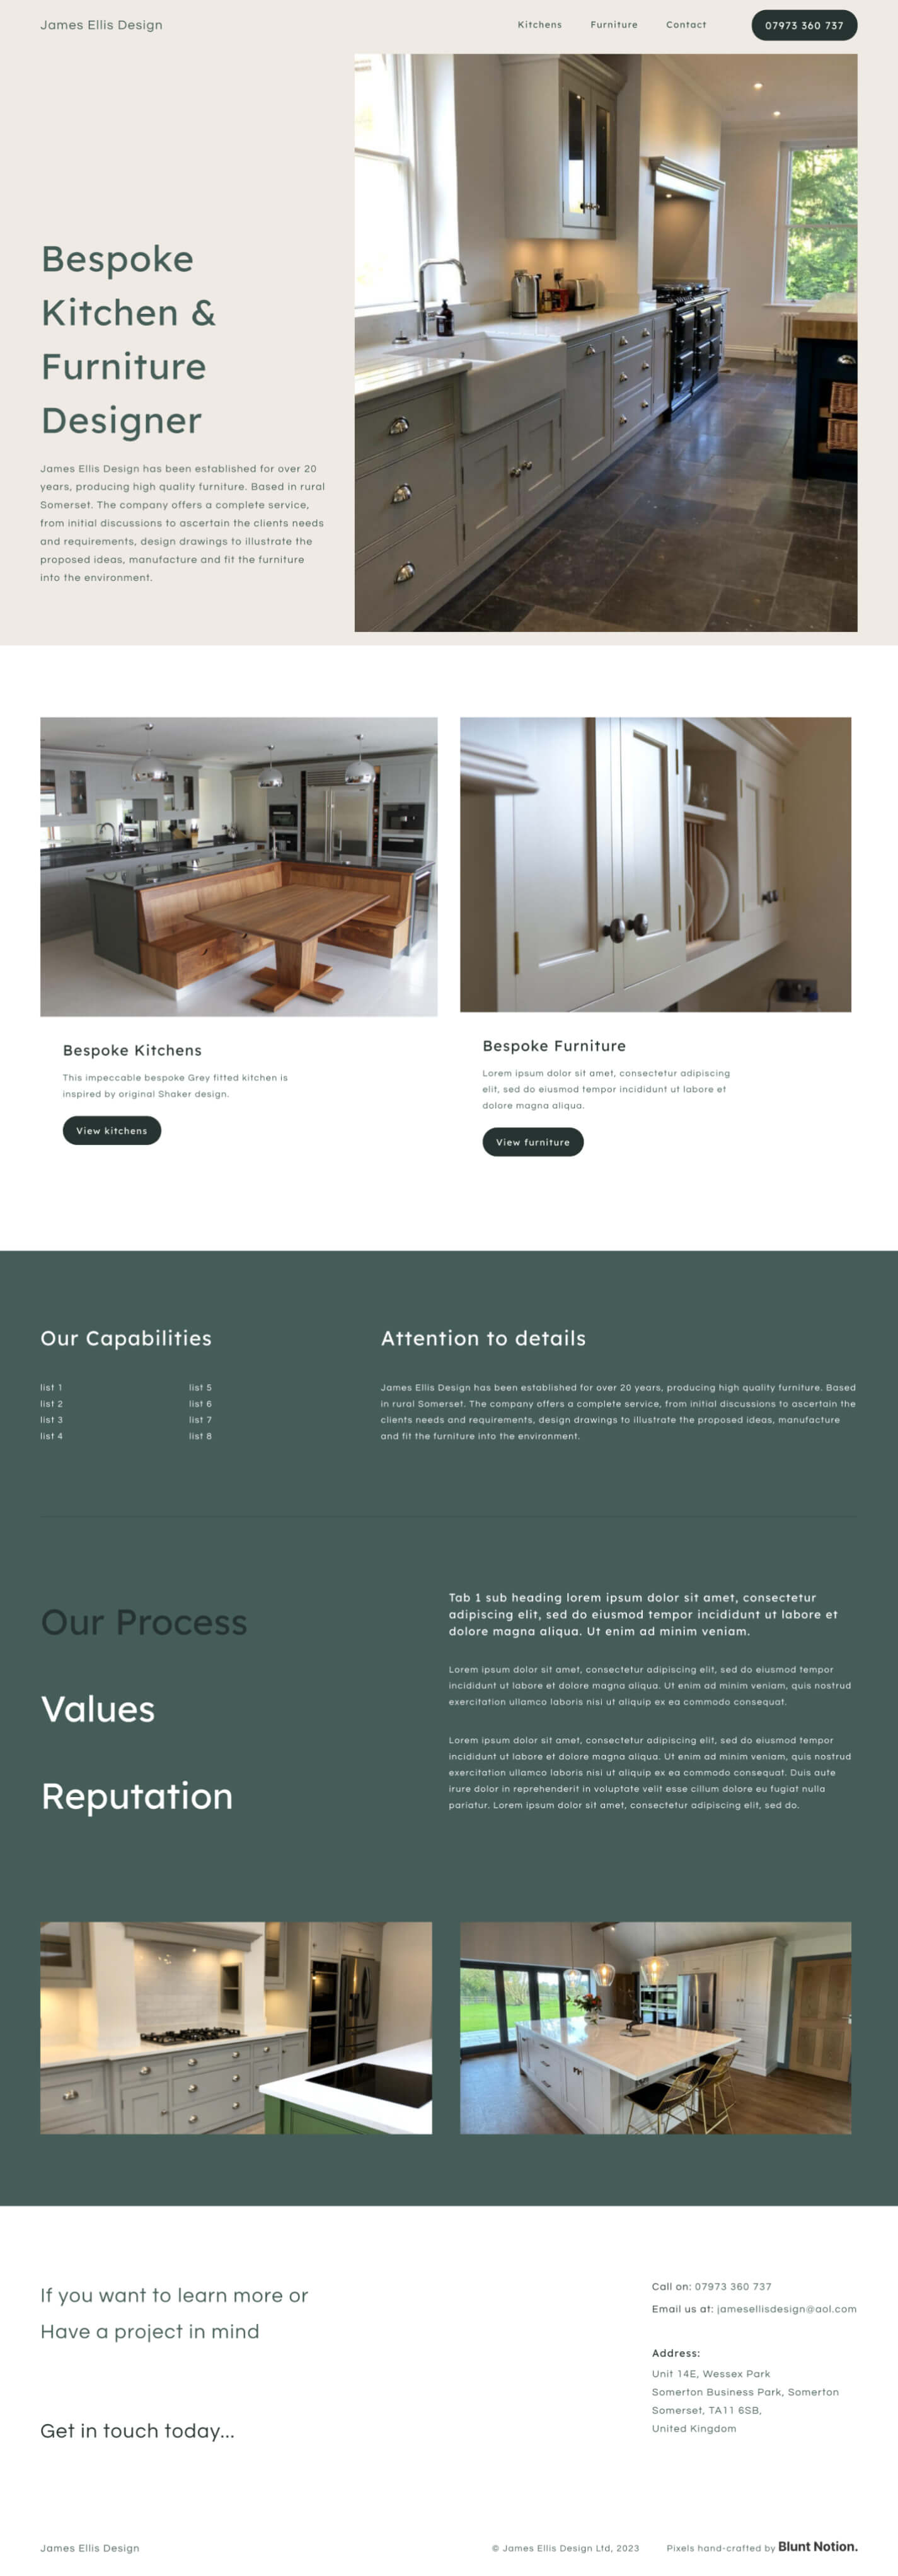 James Ellis Design home page website design